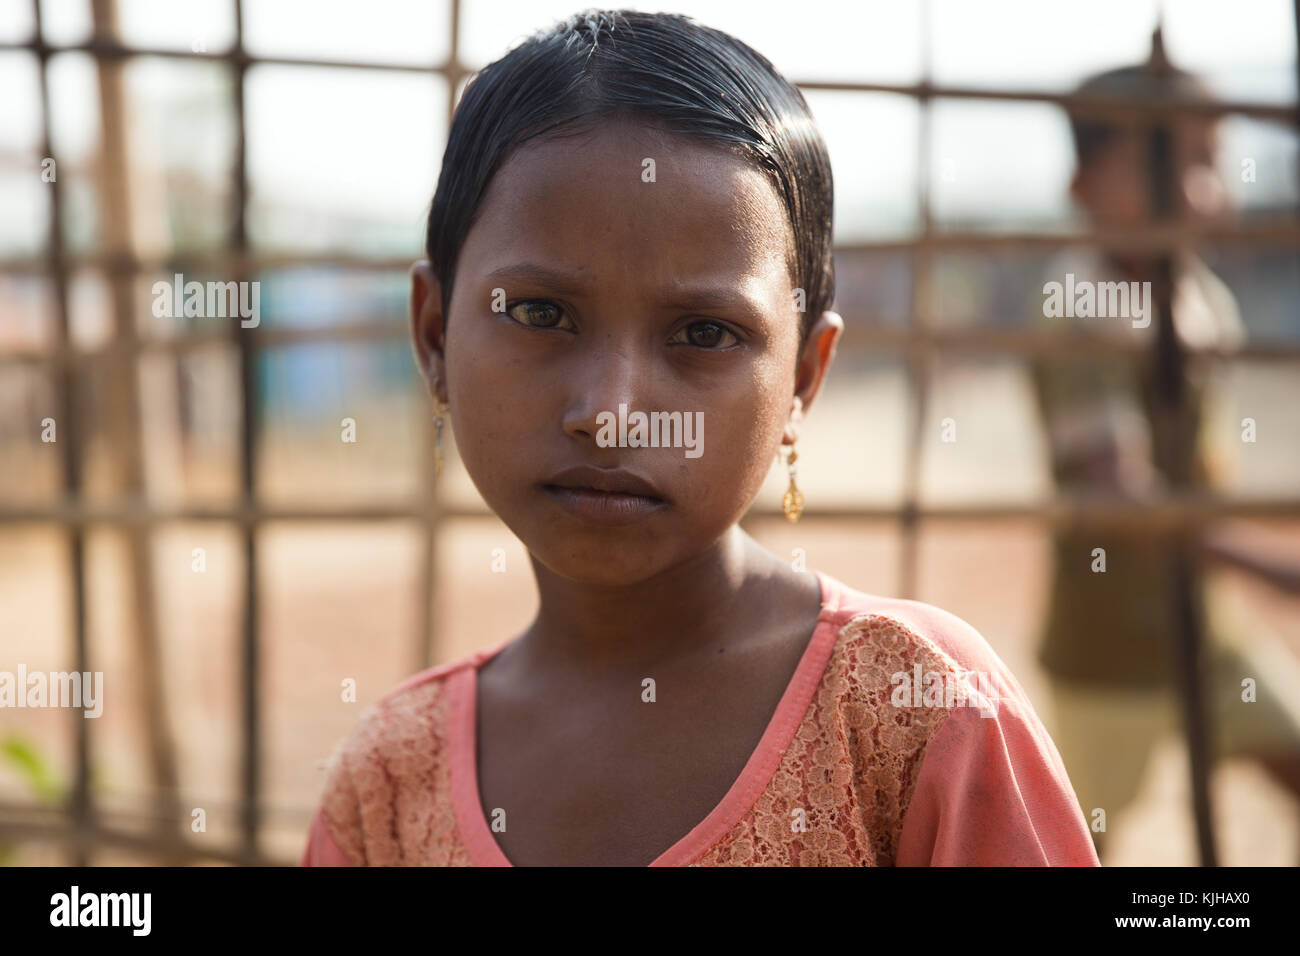 Novembre 23, 2017 - Cox's Bazar, bangladesh - una giovane ragazza rohingya guarda profondamente e al di là dei suoi anni dal cibo hrf cucina.kutupalong Refugee Camp è un campo profughi situato in ukhia In Cox bazar regione del Bangladesh, si forniscono essenzialmente in frantumi per i rohingya musulmani fuggiti dalla persecuzione religiosa in Myanmar. l'Acnur stima che vi sono almeno 30.000 rifugiati nel campo come tardo 2017. Credito: marcus paracolpi/sopa/zuma filo/alamy live news Foto Stock